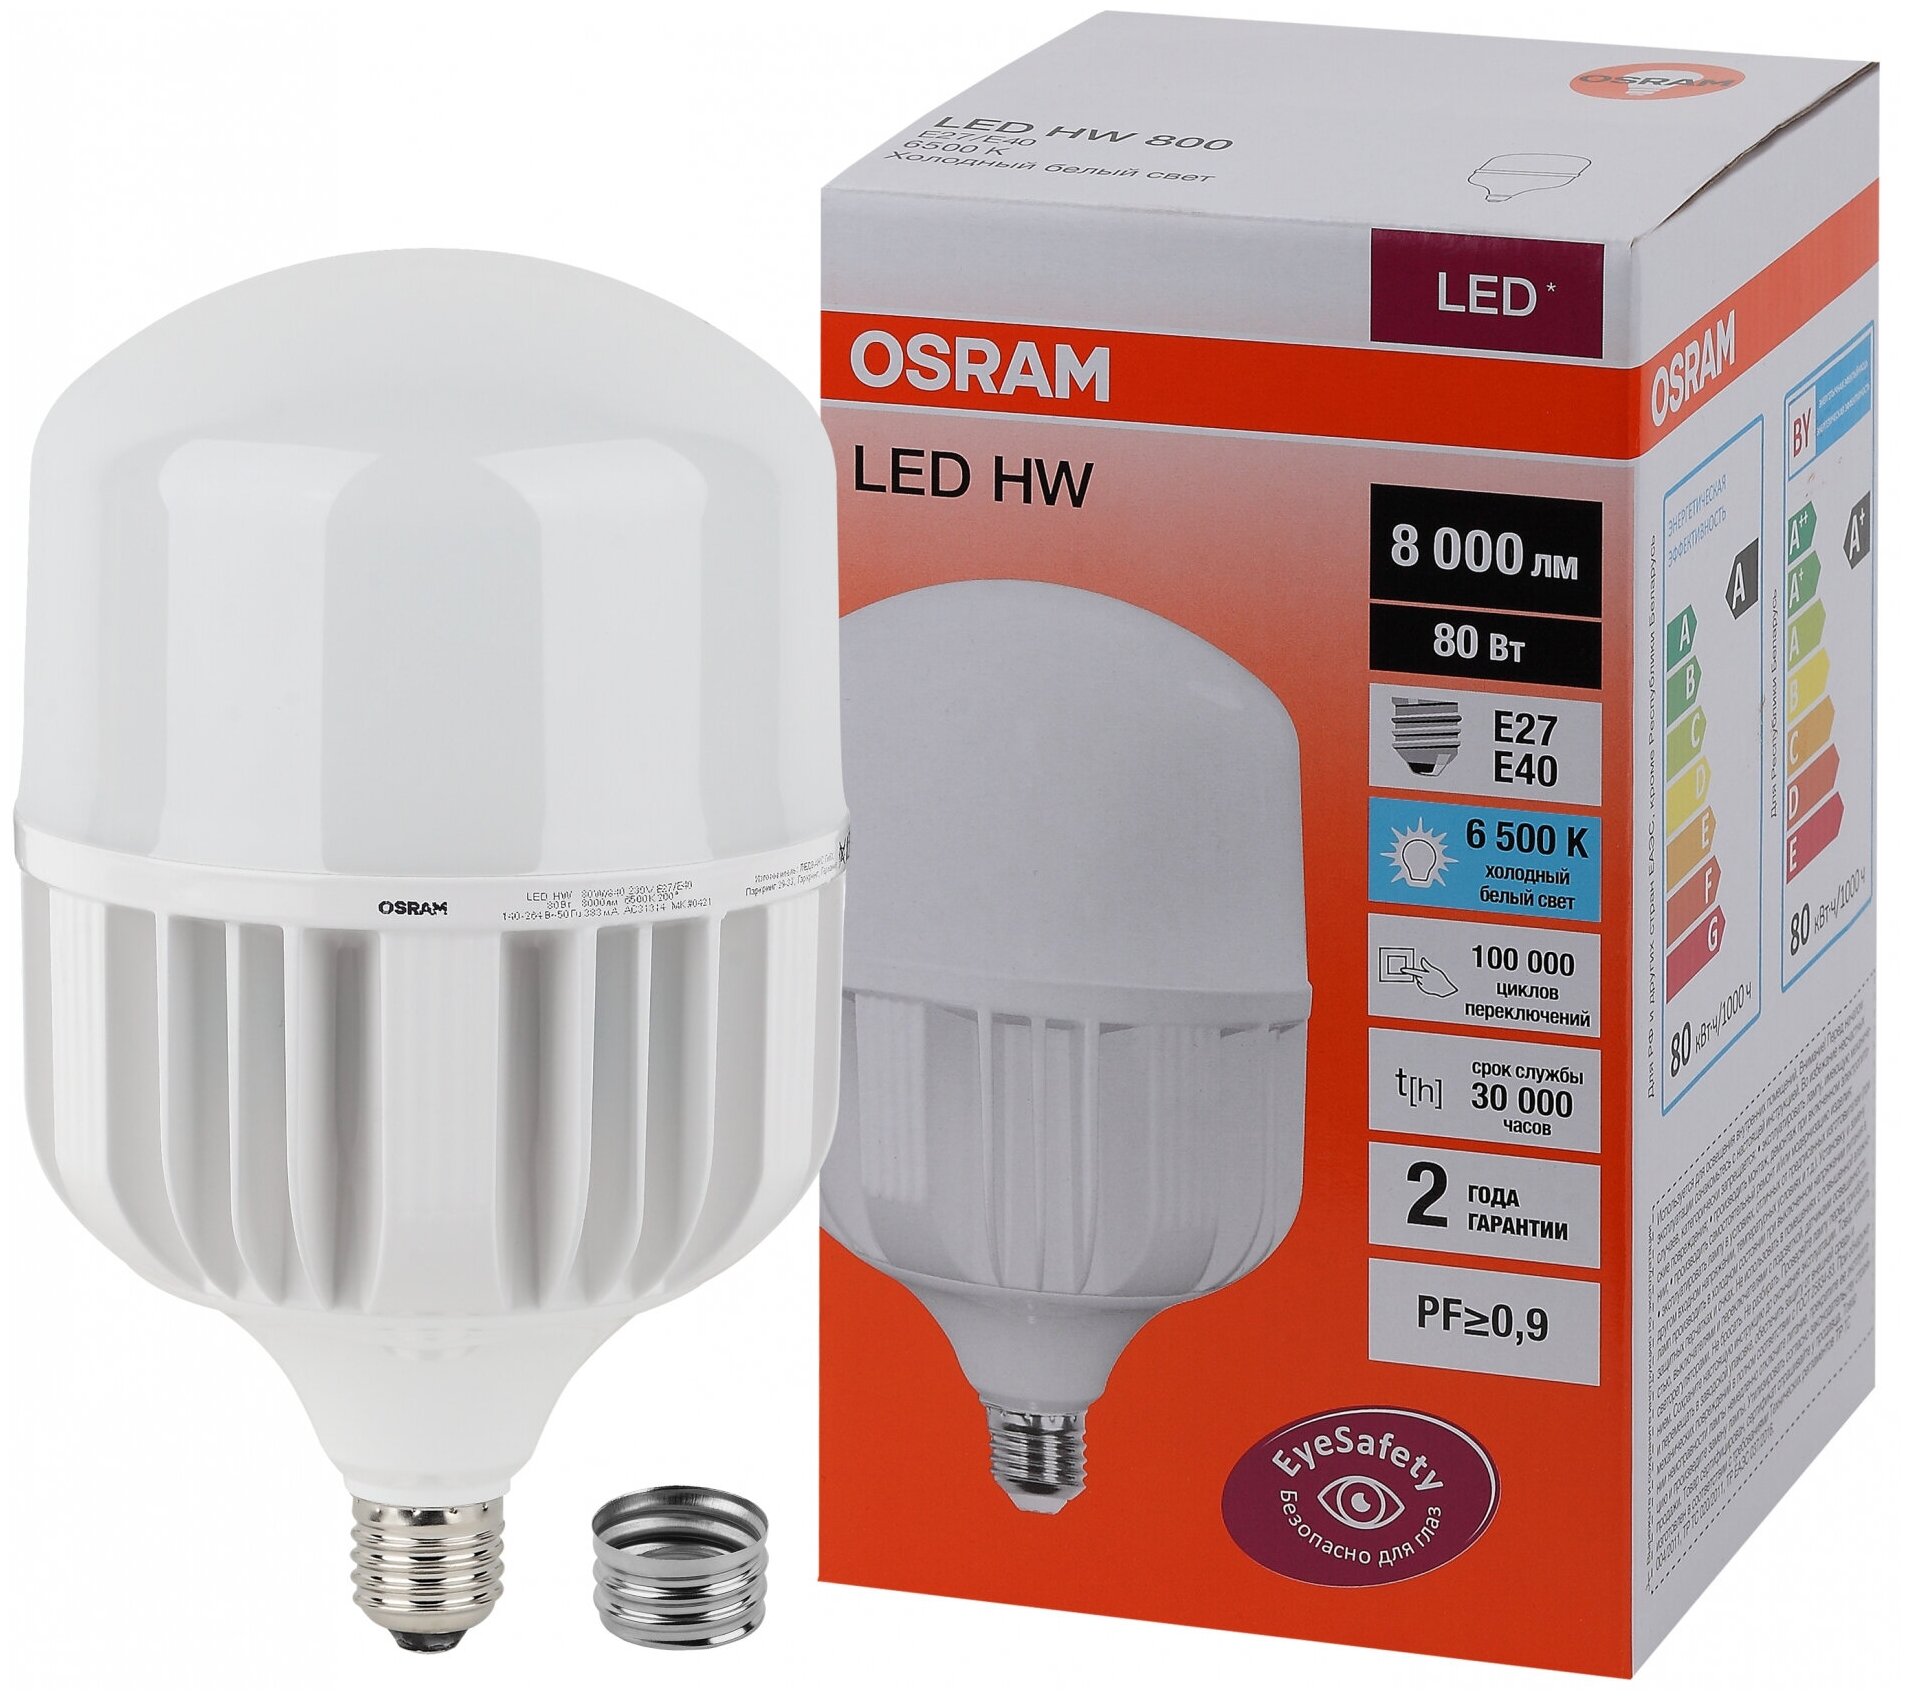 Лампа светодиодная LED HW 80Вт E27/E40 (замена 800Вт) холодный белый () OSRAM 4058075576957 (1 шт.)